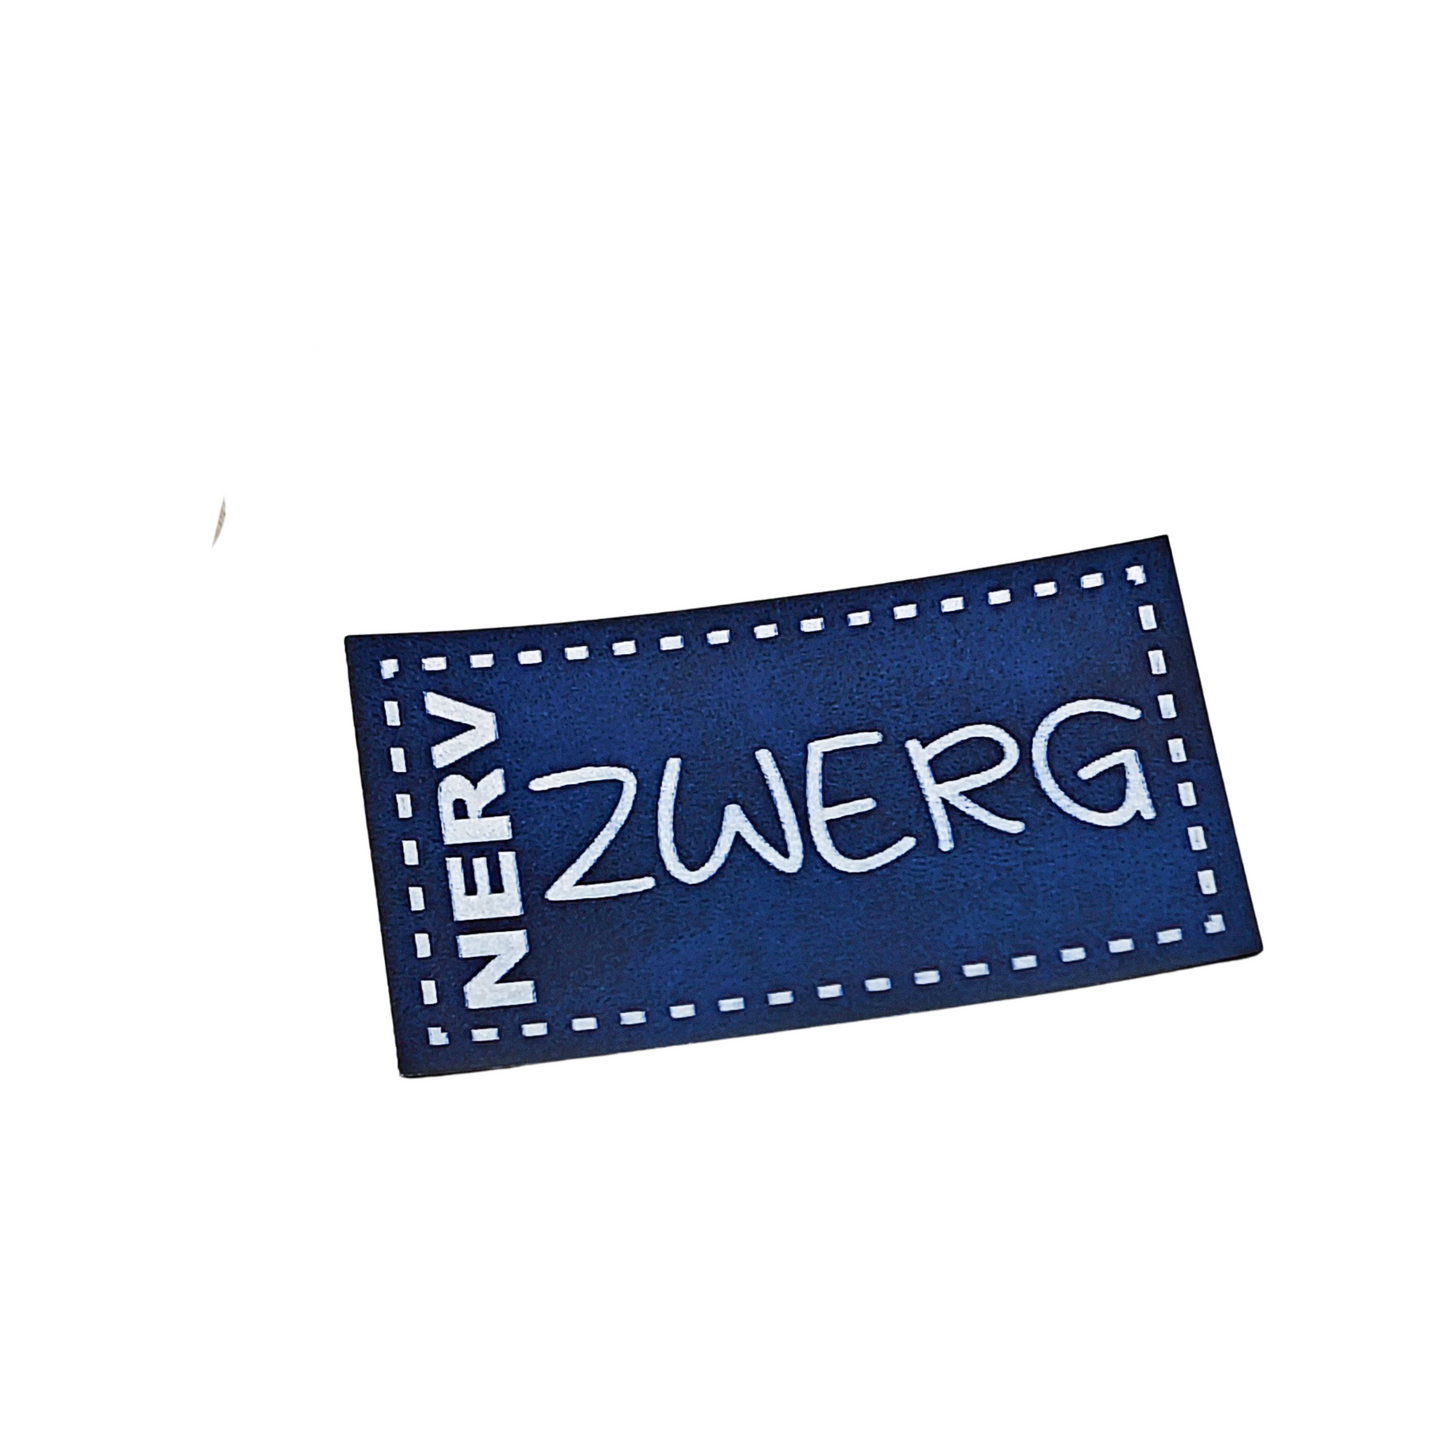 Aufnäher Label CRAZY "NERV ZWERG" blau aus Kunstleder